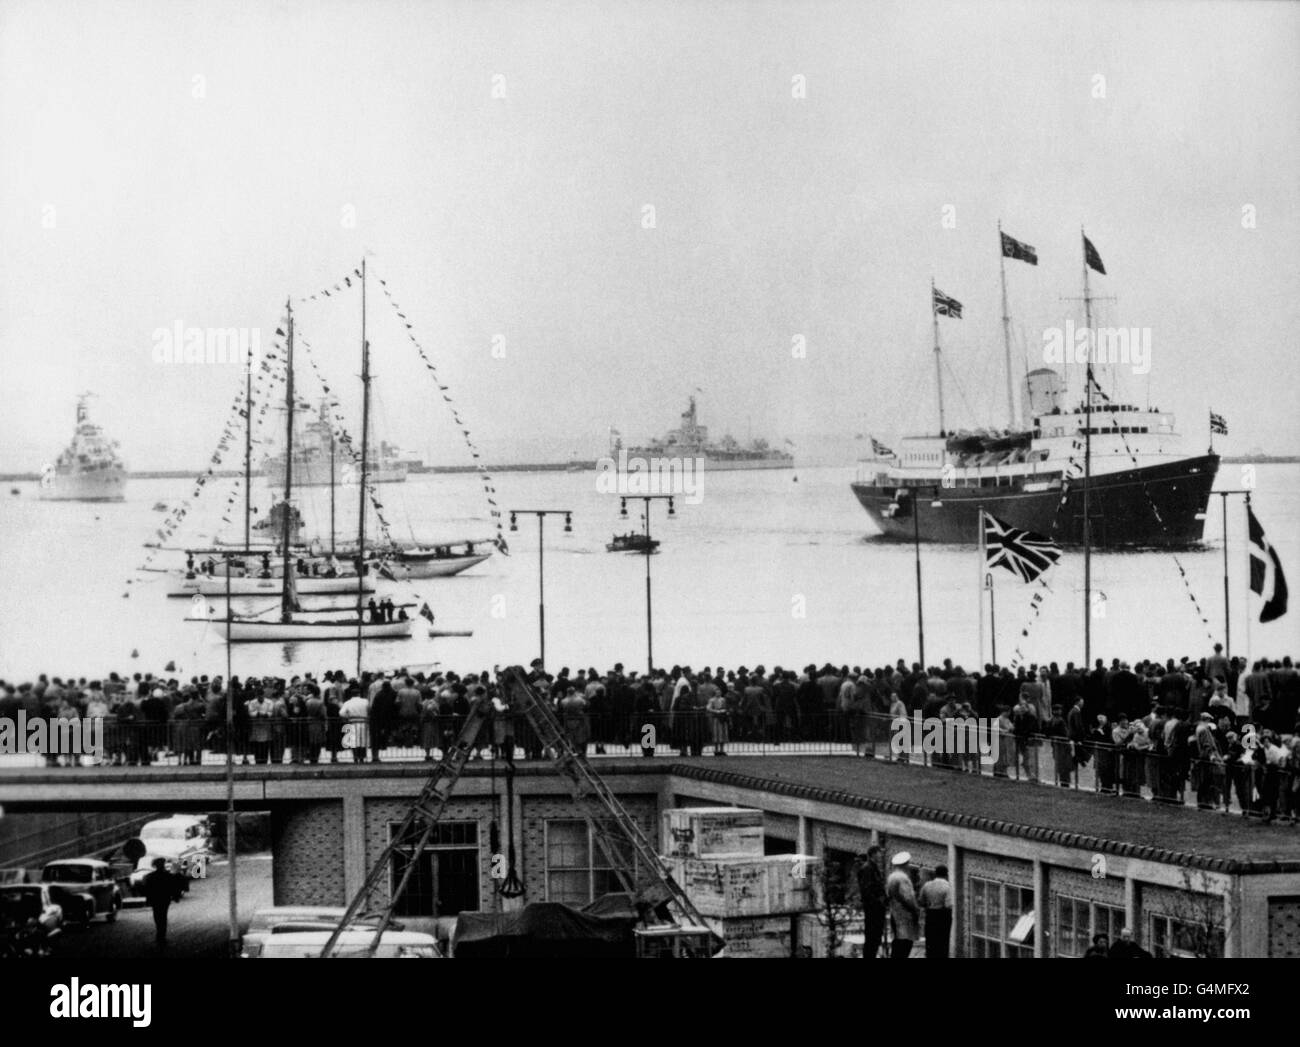 La foule se trouve sur le quai tandis que le yacht royal Britannia navigue dans le port de Copenhague, amenant la reine Elizabeth II et le duc d'Édimbourg à commencer leur visite d'État de trois jours. Banque D'Images